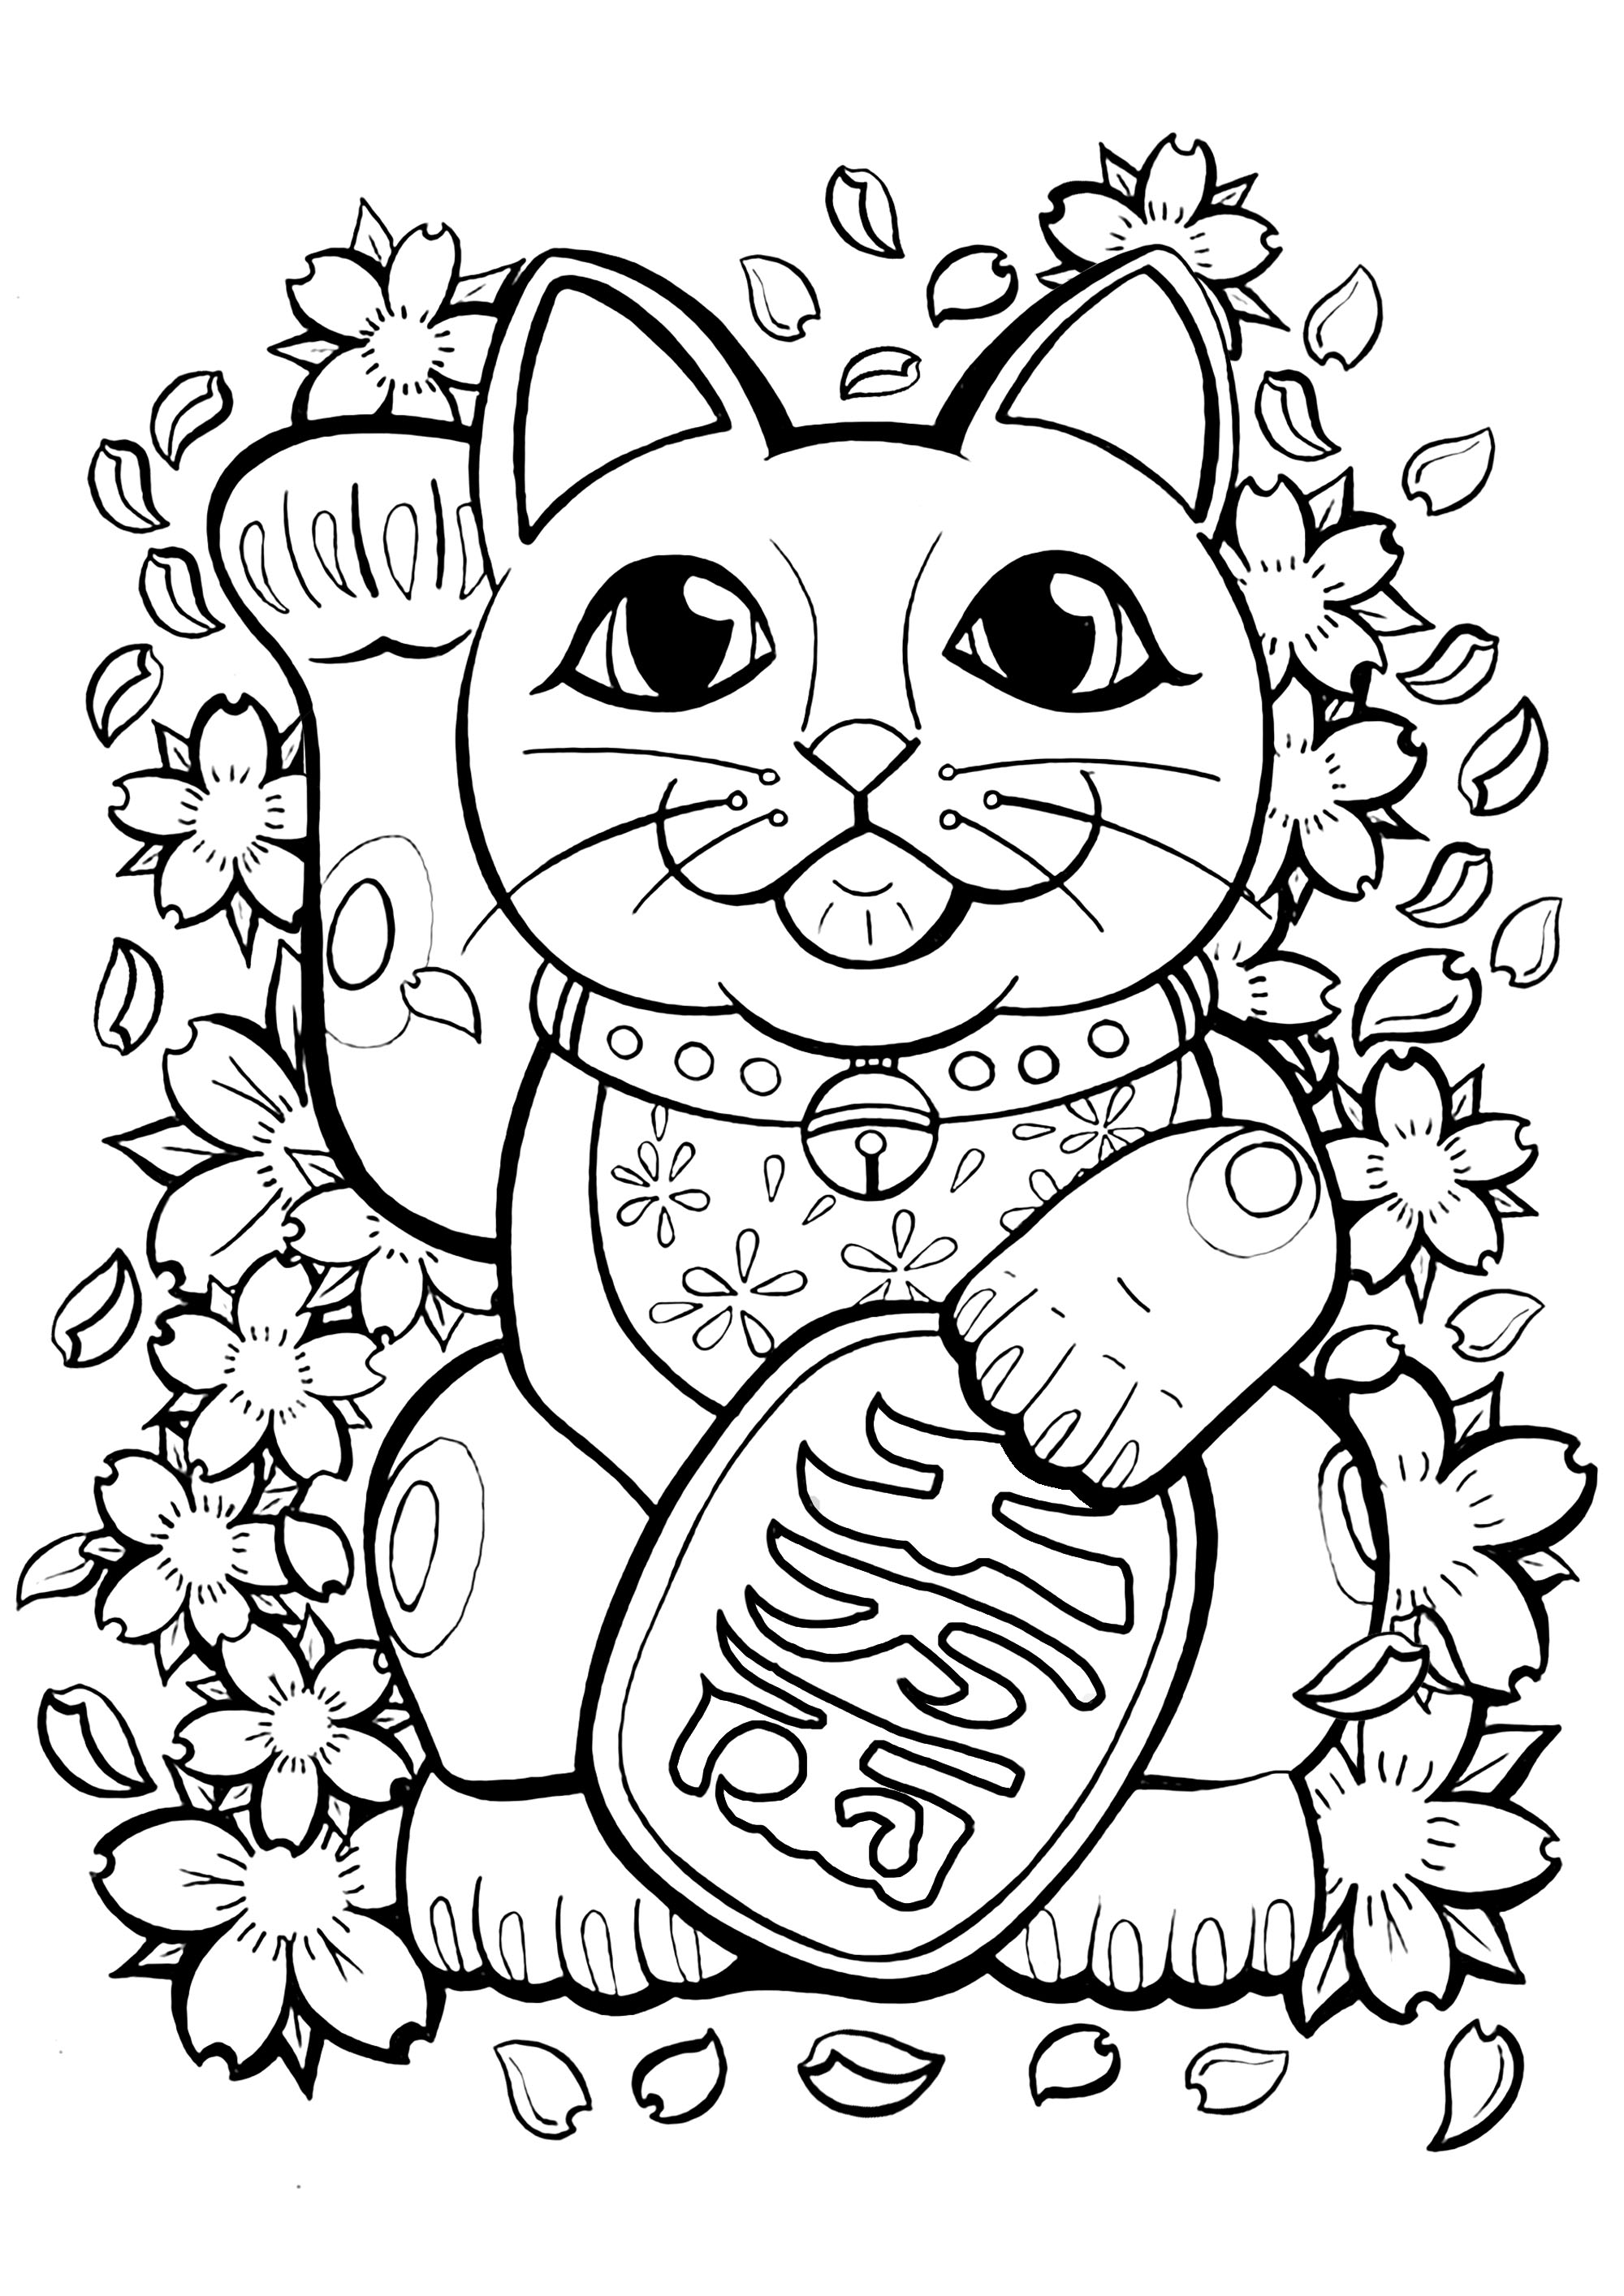 Coloriez ce Maneki Neko (littéralement «chat qui attire») et tous les éléments mignons autour de lui